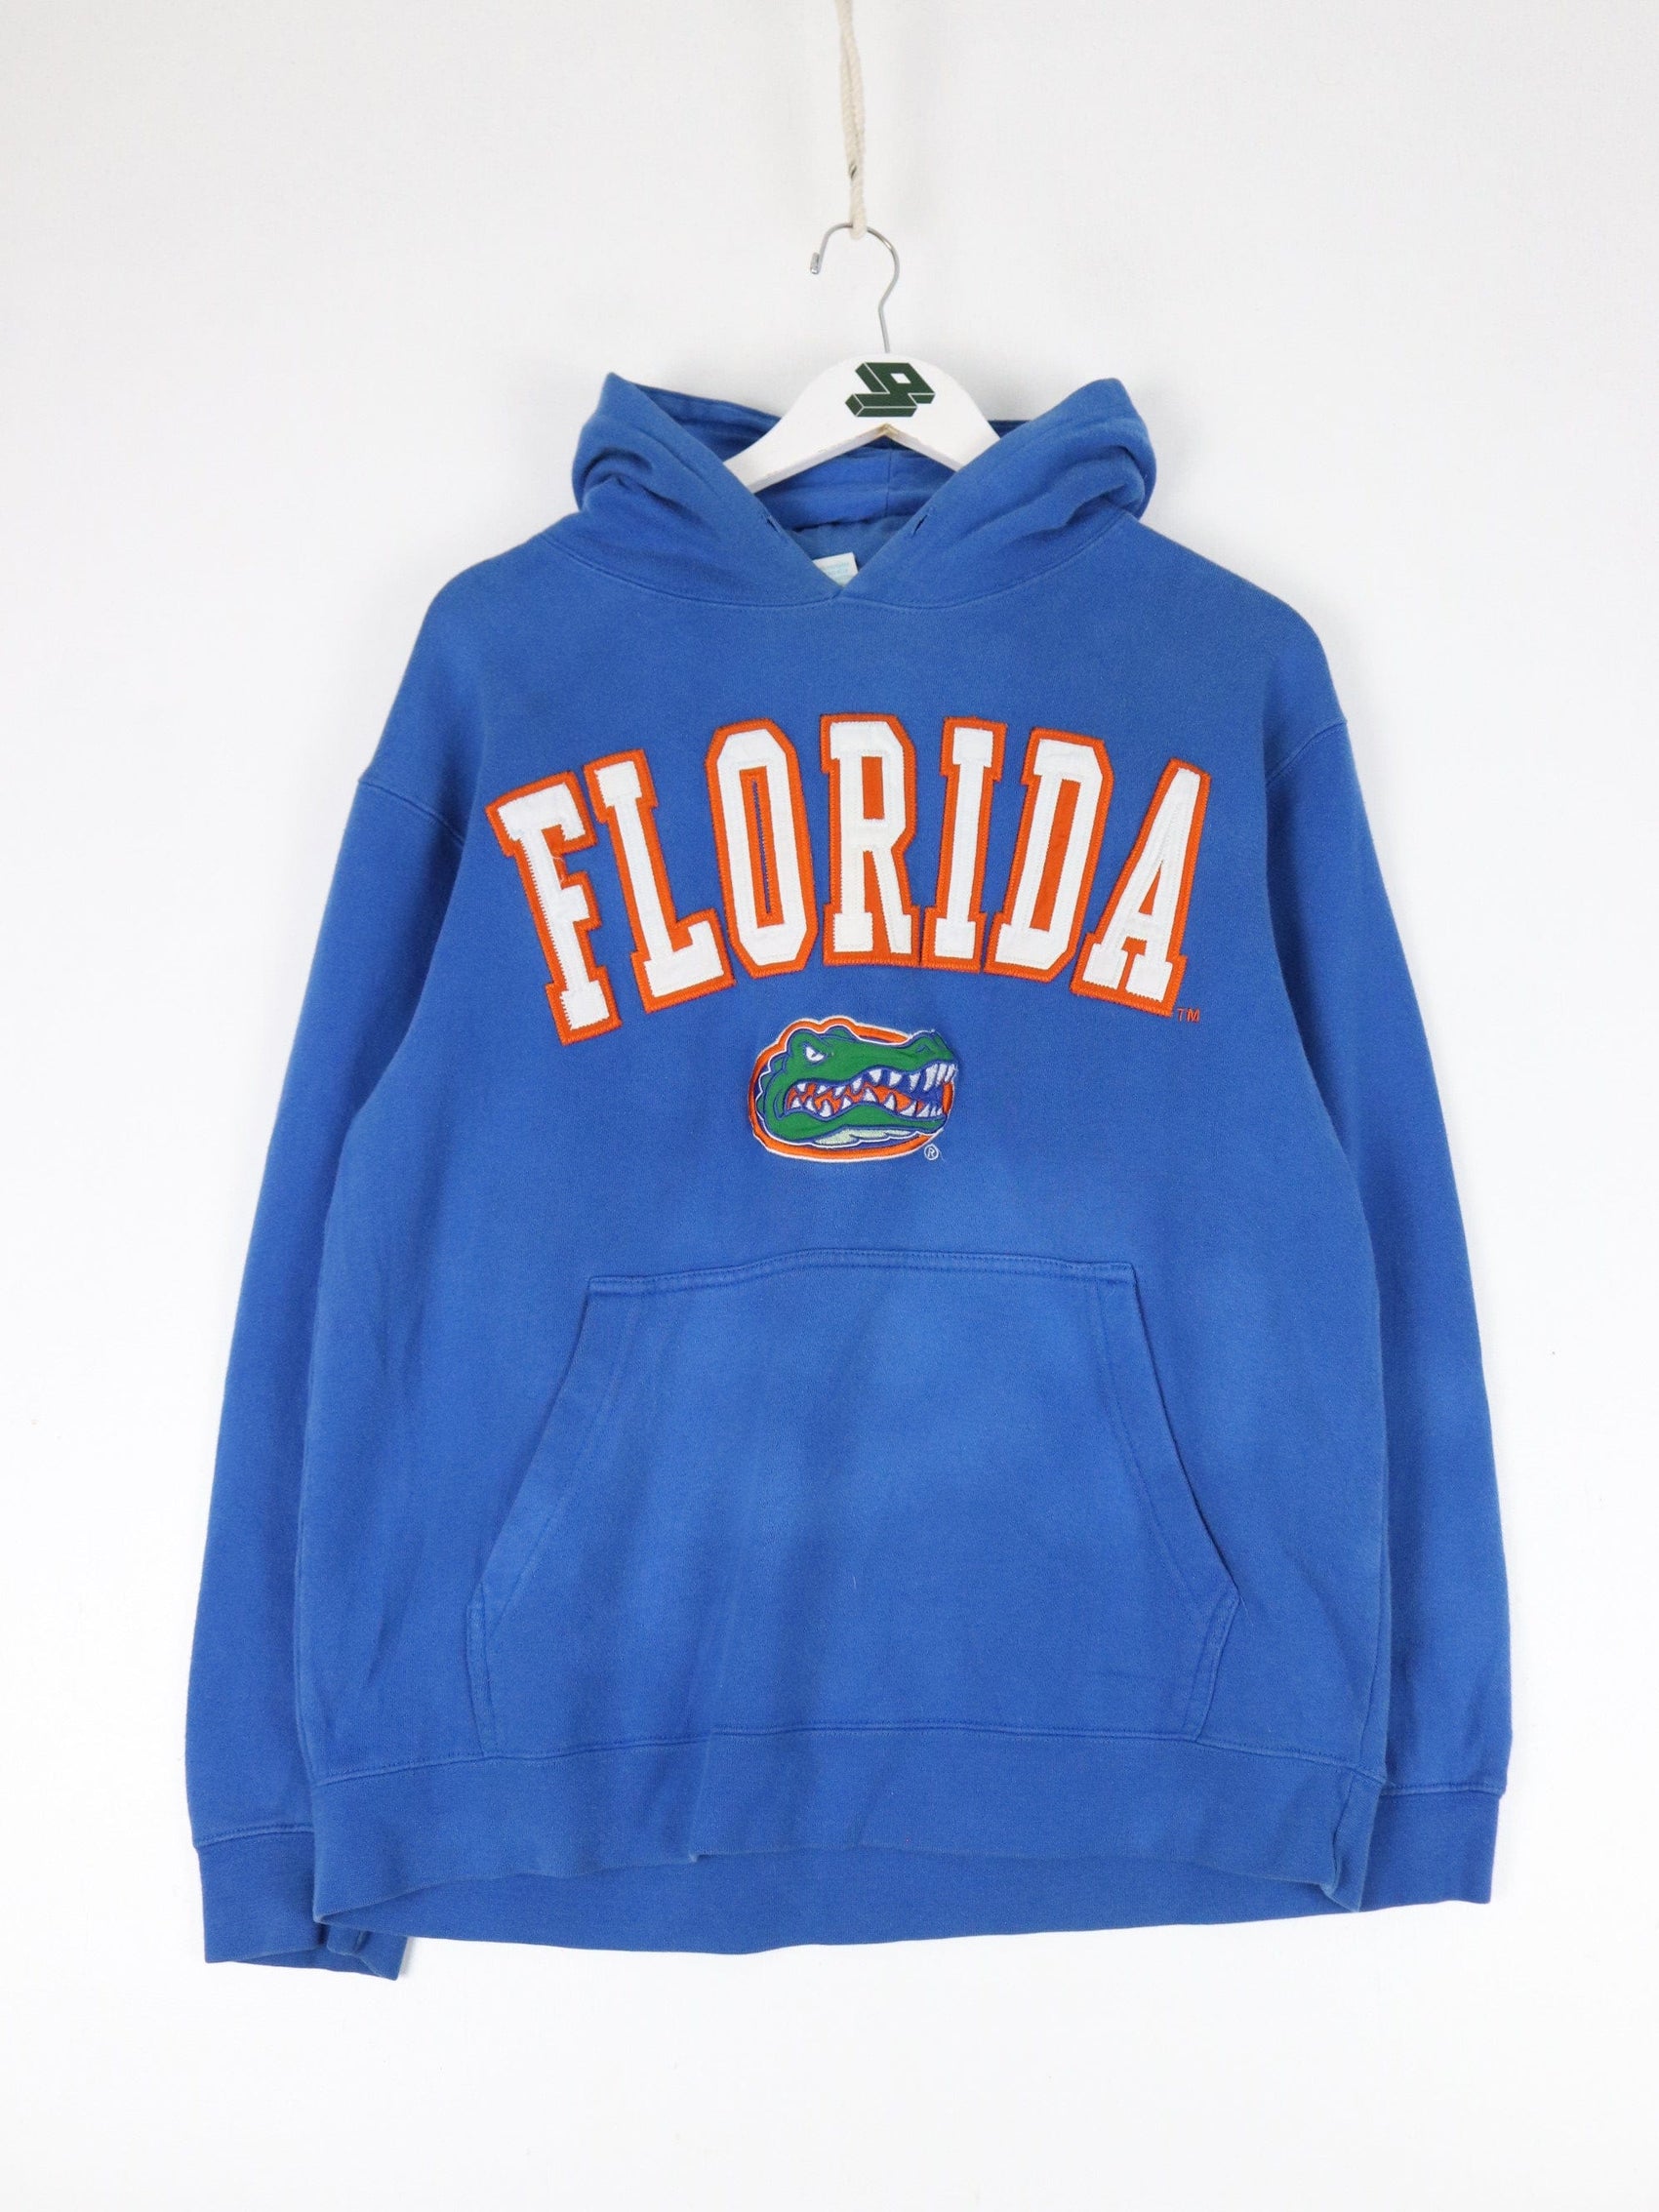 Collegiate Sweatshirts & Hoodies Florida Gators Sweatshirt Mens Medium Blue College Hoodie